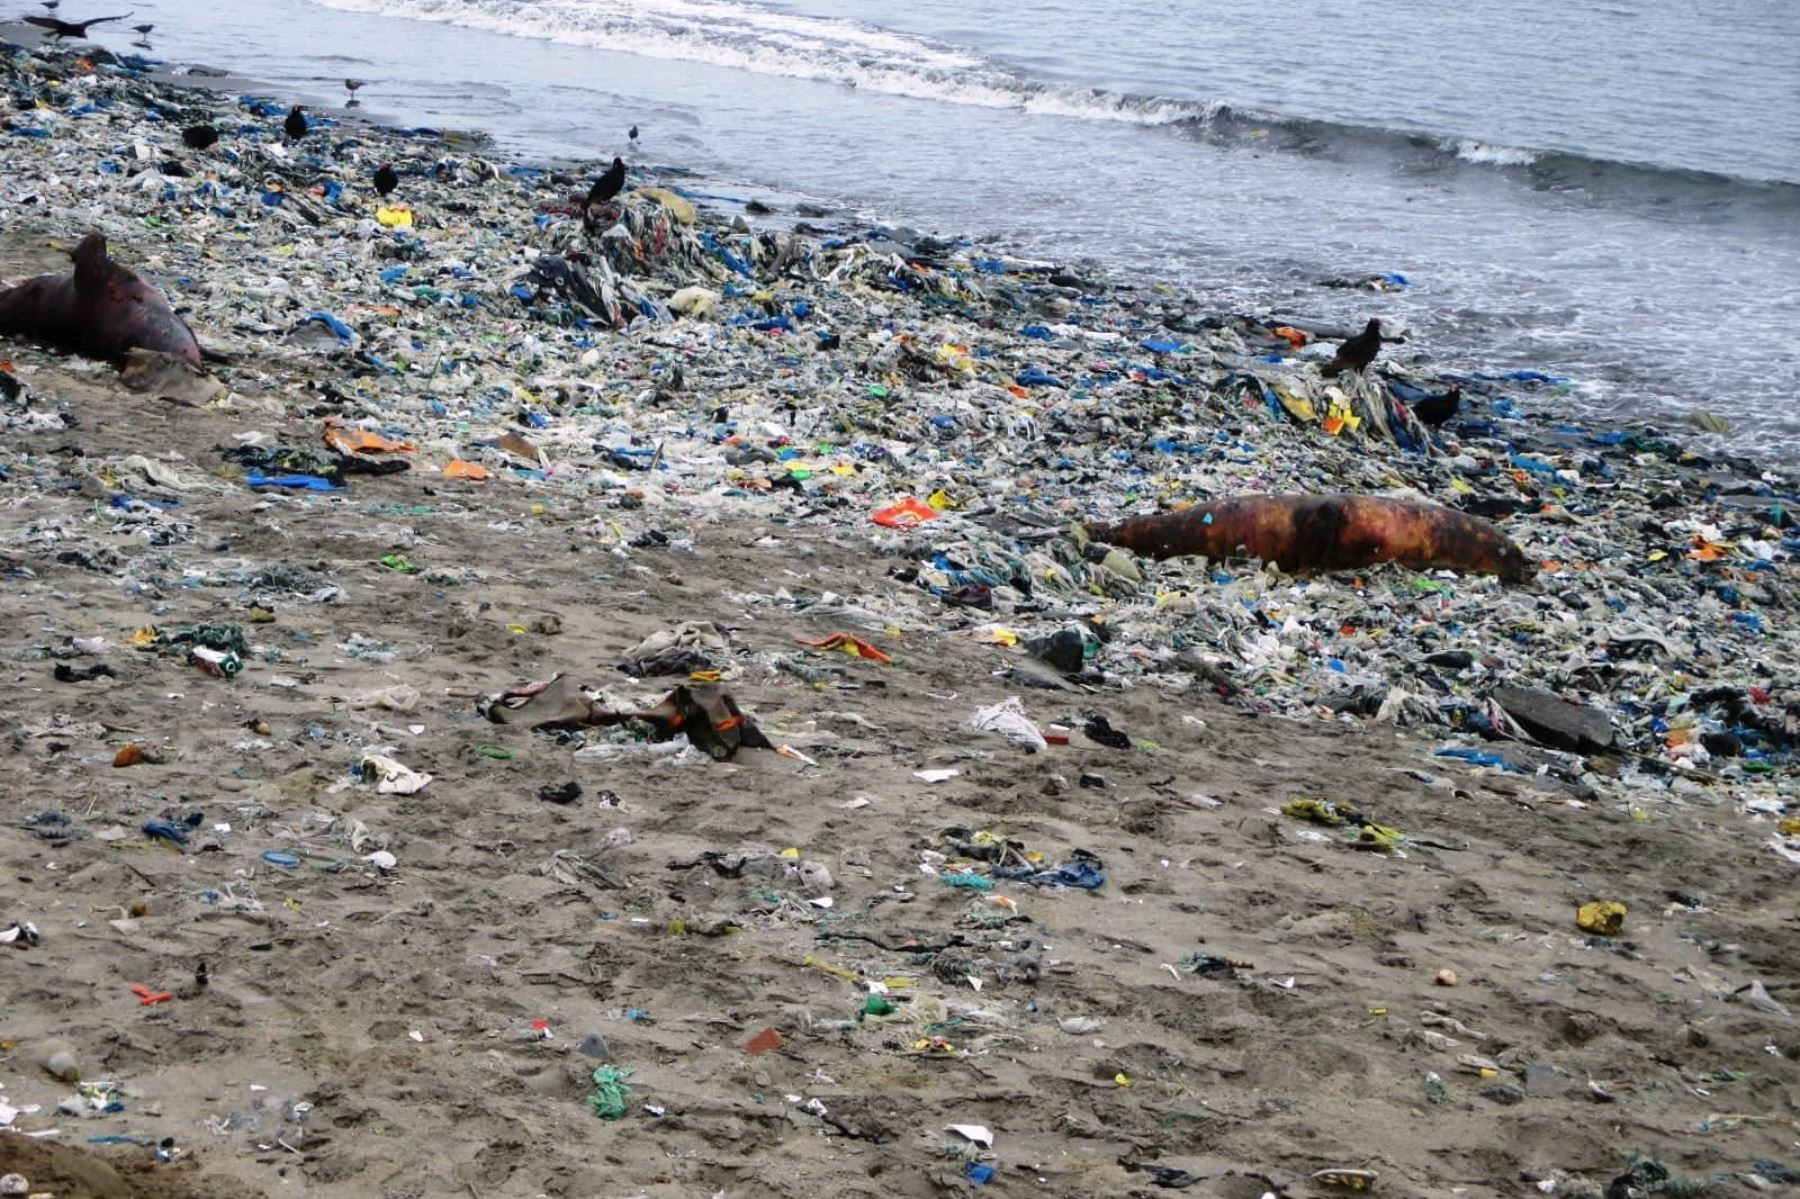 Efluentes residuales domésticos arrojados directamente al cuerpo marino de la bahía El Ferrol, sin previo tratamiento, han provocado contaminación.